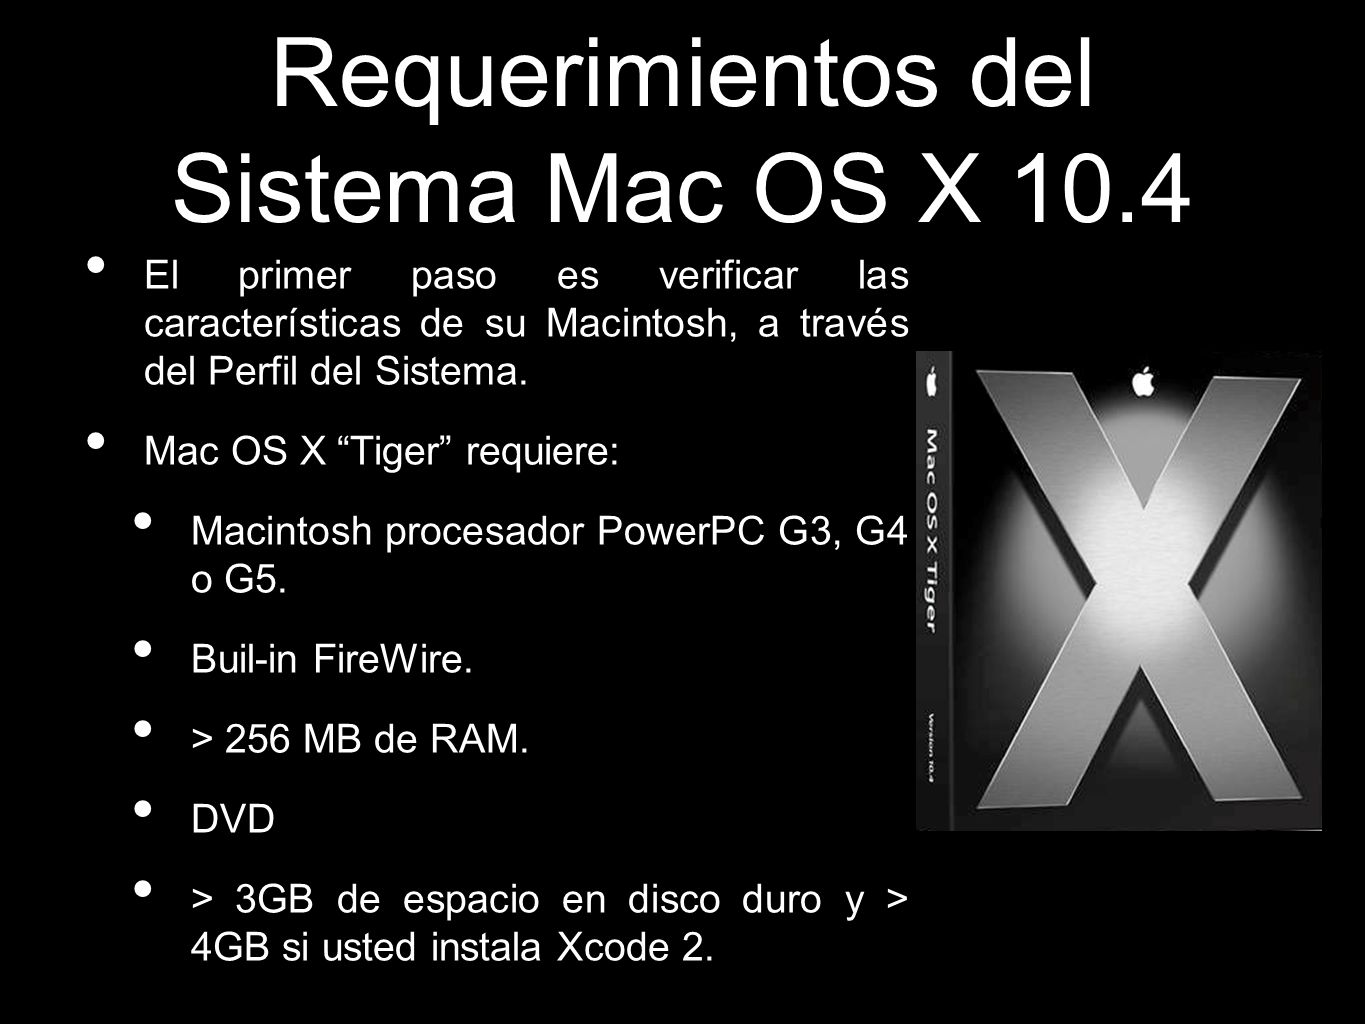 Requerimientos del Sistema Mac OS X 10.4